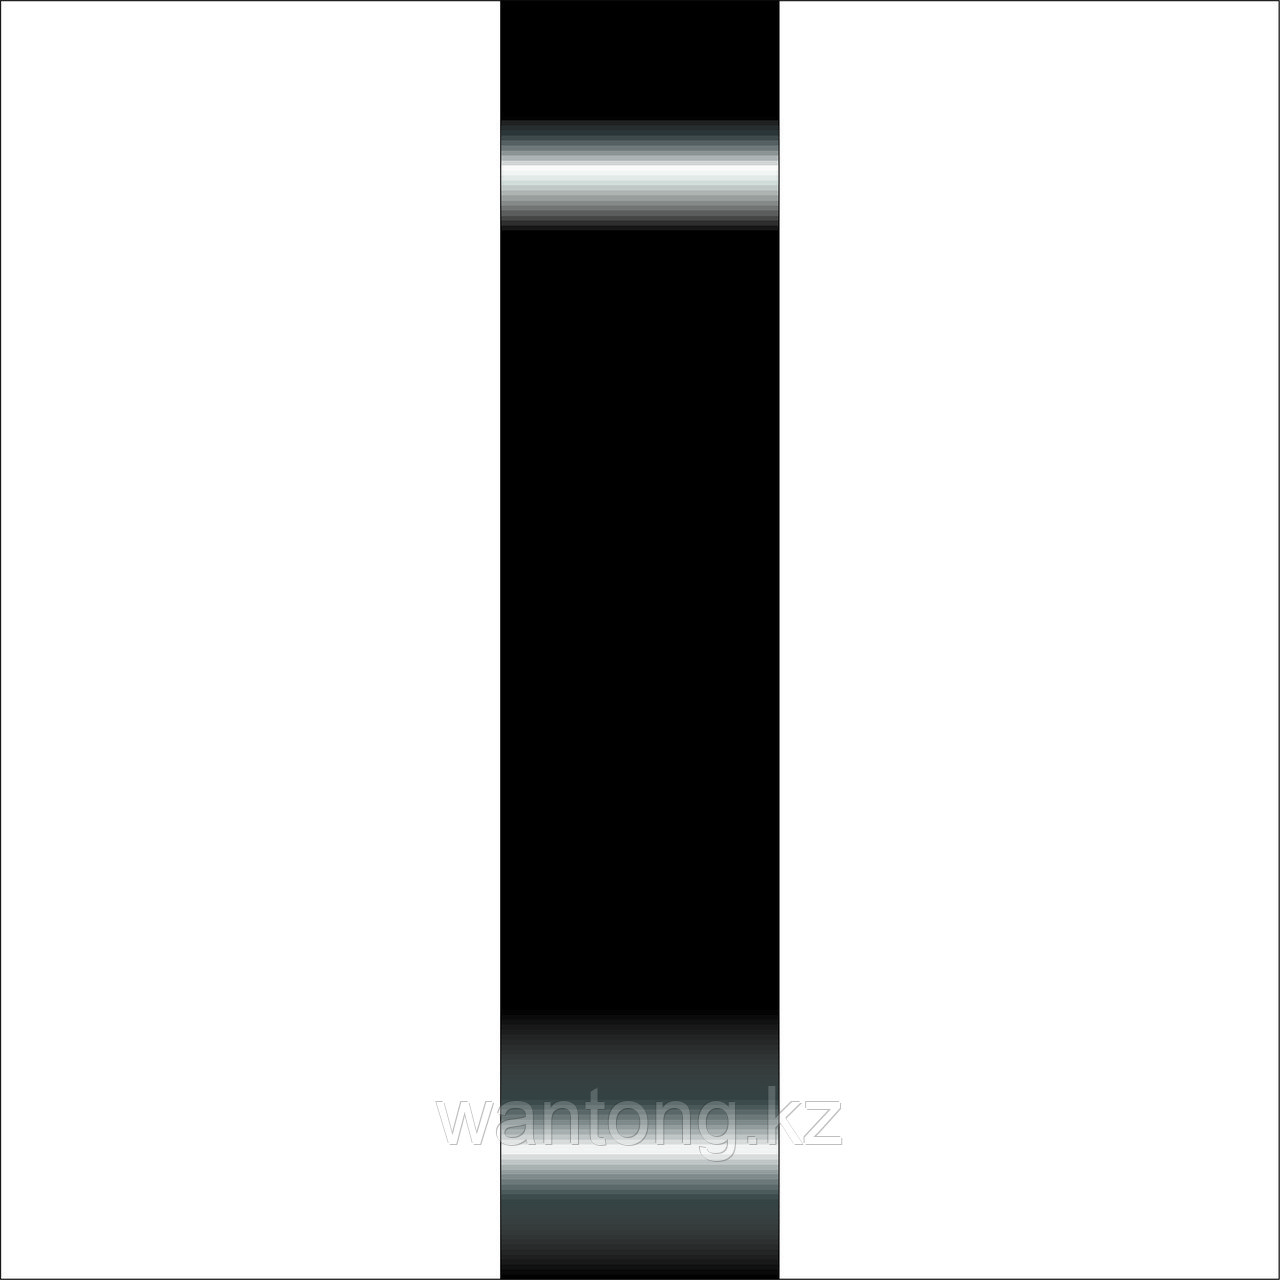 Ленты для объемных букв (черный), фото 1